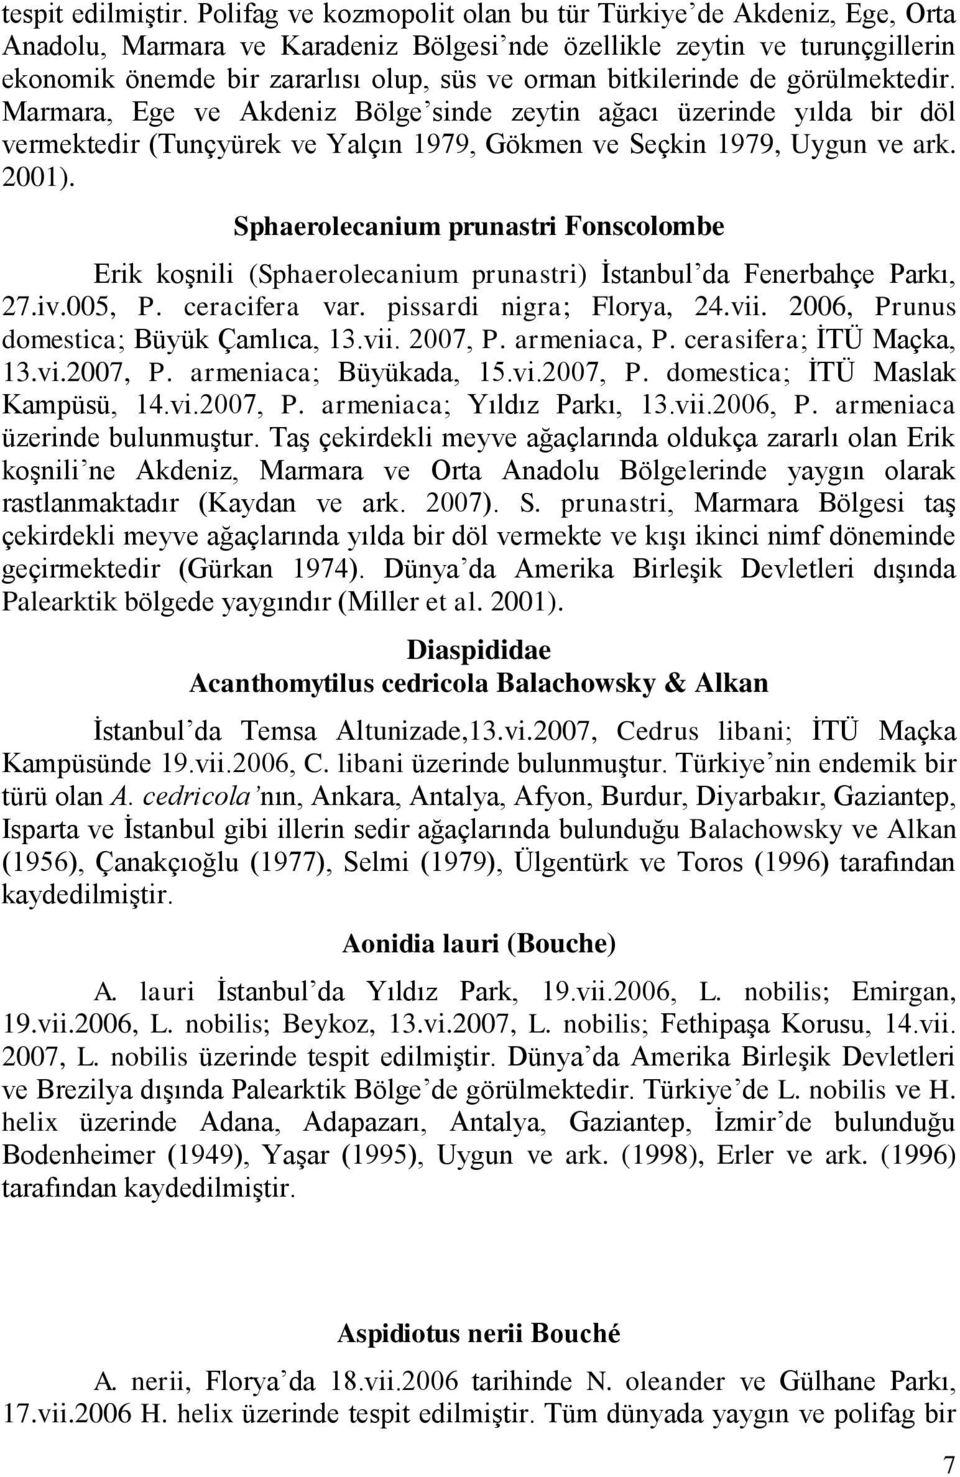 bitkilerinde de görülmektedir. Marmara, Ege ve Akdeniz Bölge sinde zeytin ağacı üzerinde yılda bir döl vermektedir (Tunçyürek ve Yalçın 1979, Gökmen ve Seçkin 1979, Uygun ve ark. 2001).